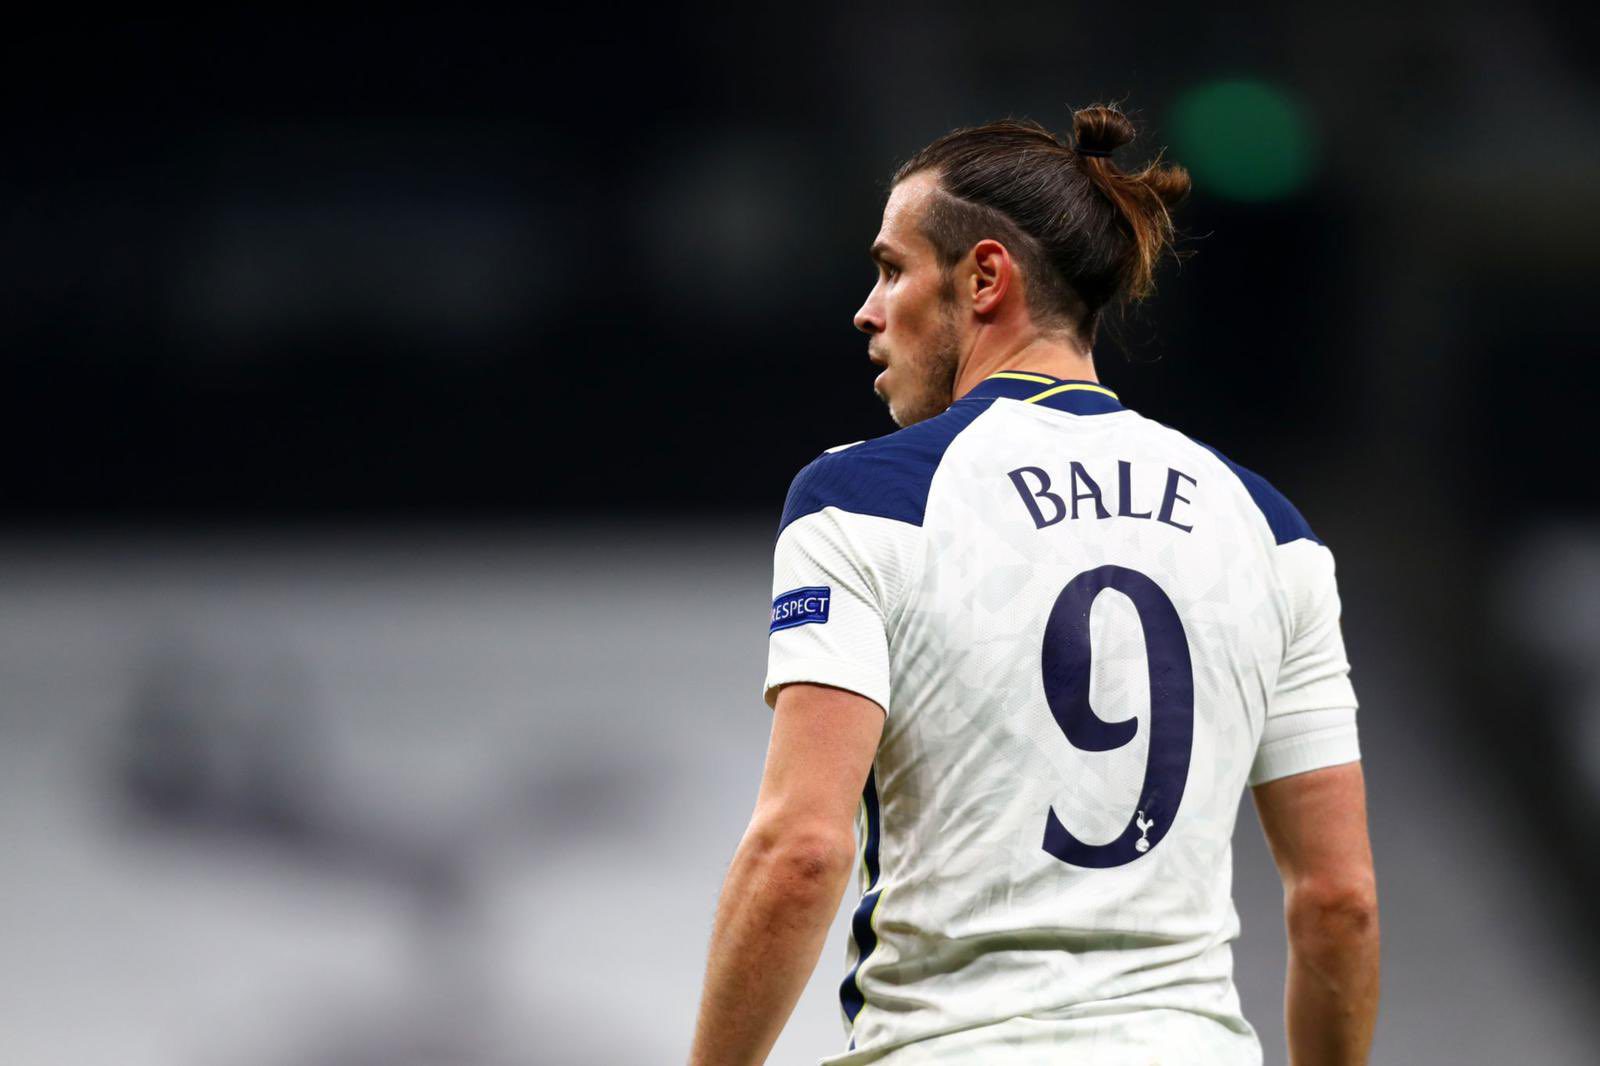 Por lesión muscular, Gareth Bale causa baja en el Tottenham "las próximas semanas"